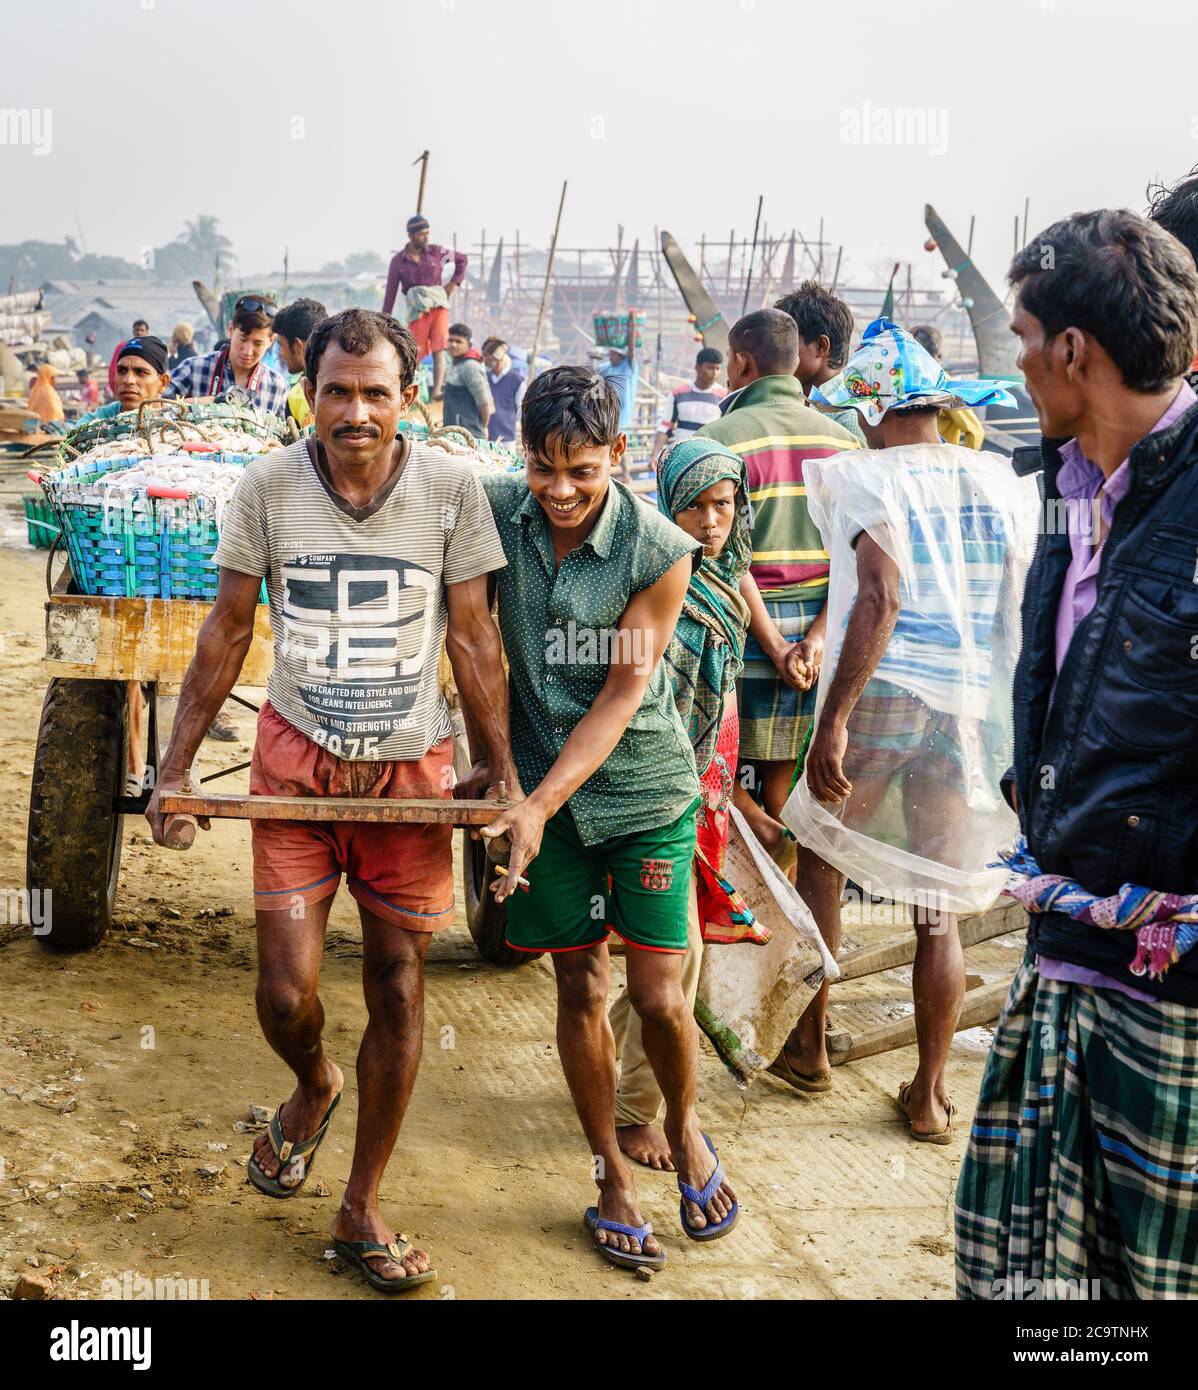 Chittagong, Bangladesch, 23. Dezember 2017: Fischer ziehen auf einem Markt in Chittagong, Bangladesch, einen Wagen mit frischem Garnelenfang Stockfoto